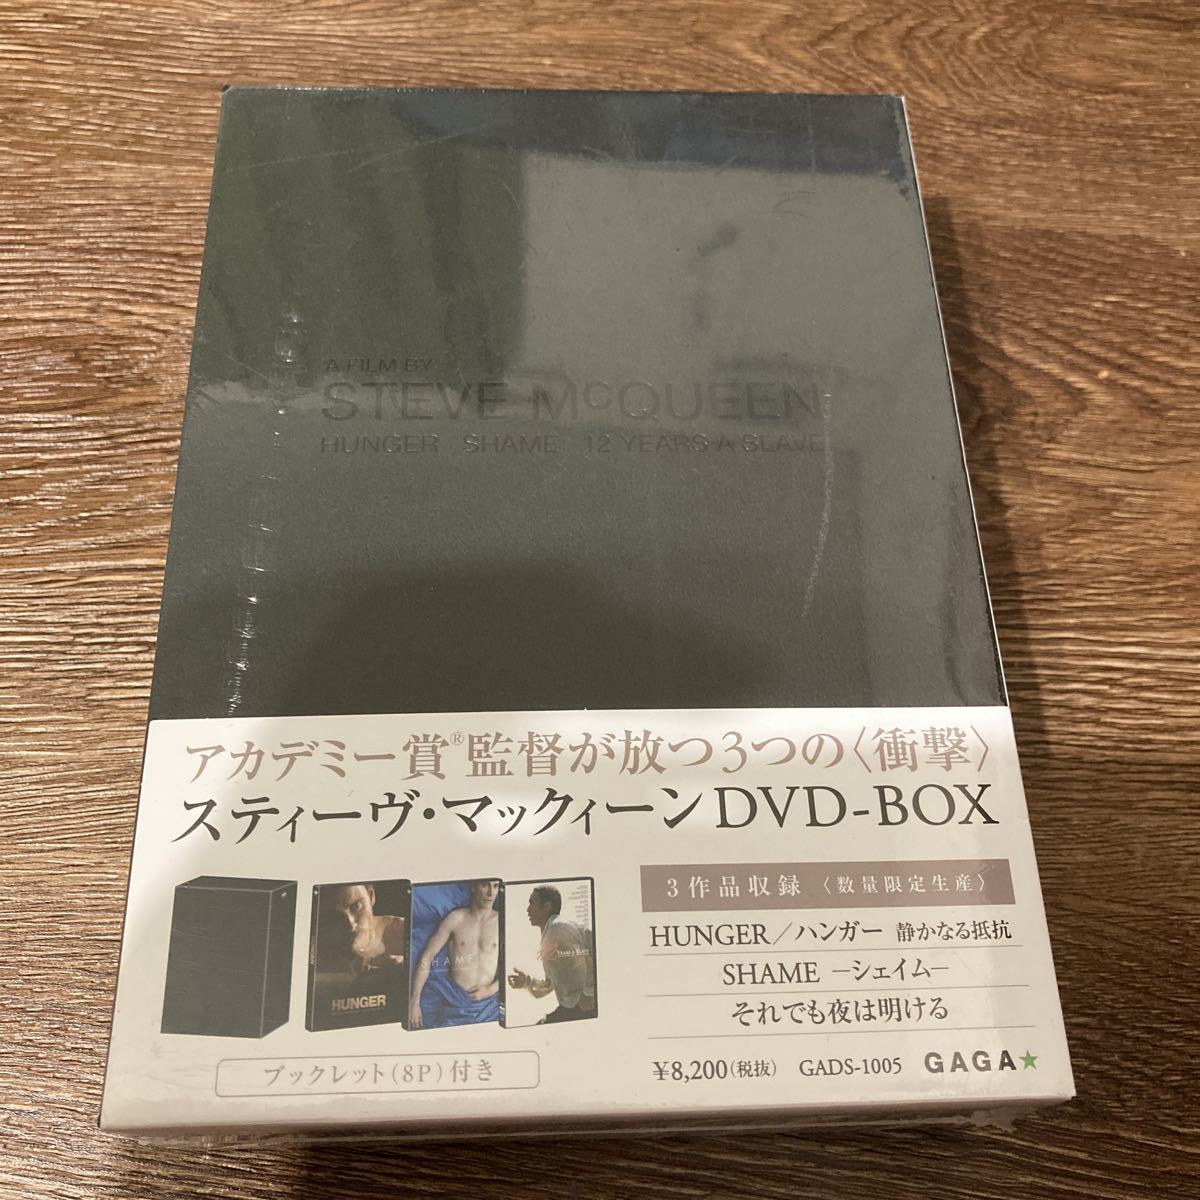 スティーヴ・マックィーン DVD BOX(3作品収録)(数量限定生産)_画像1